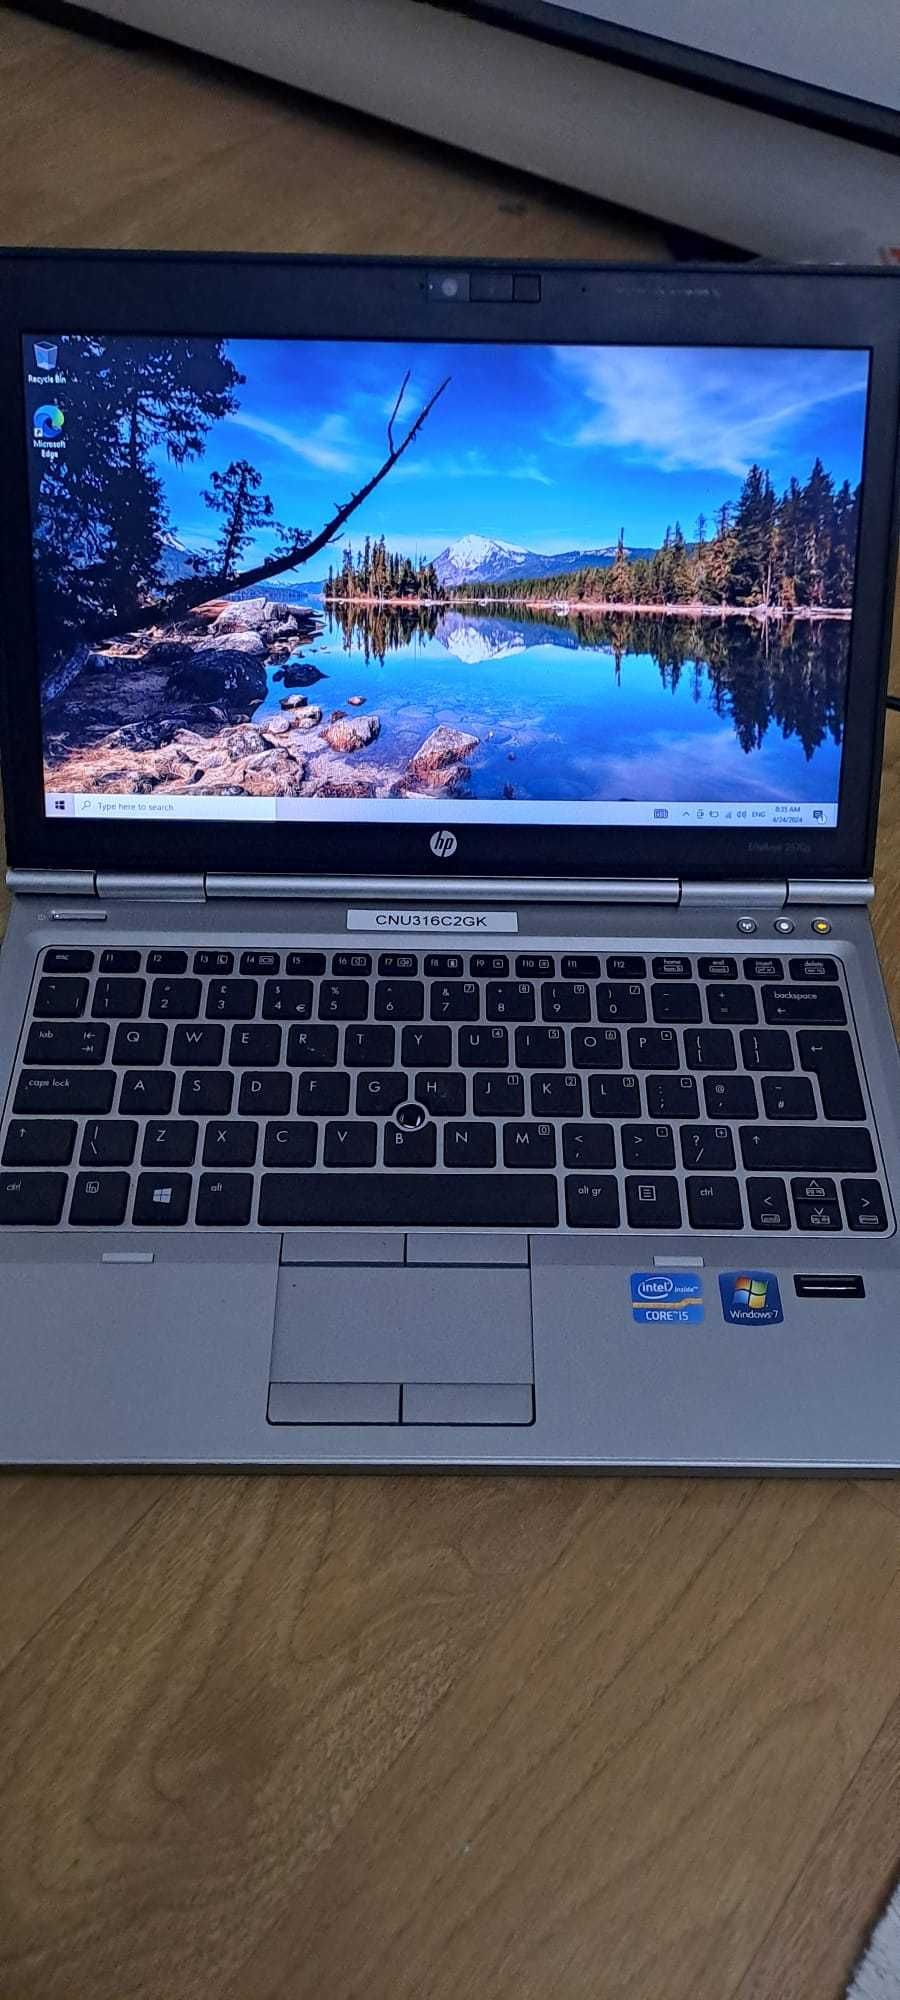 Laptop Hp : I5 / 4 gb ram / 320 gb hard